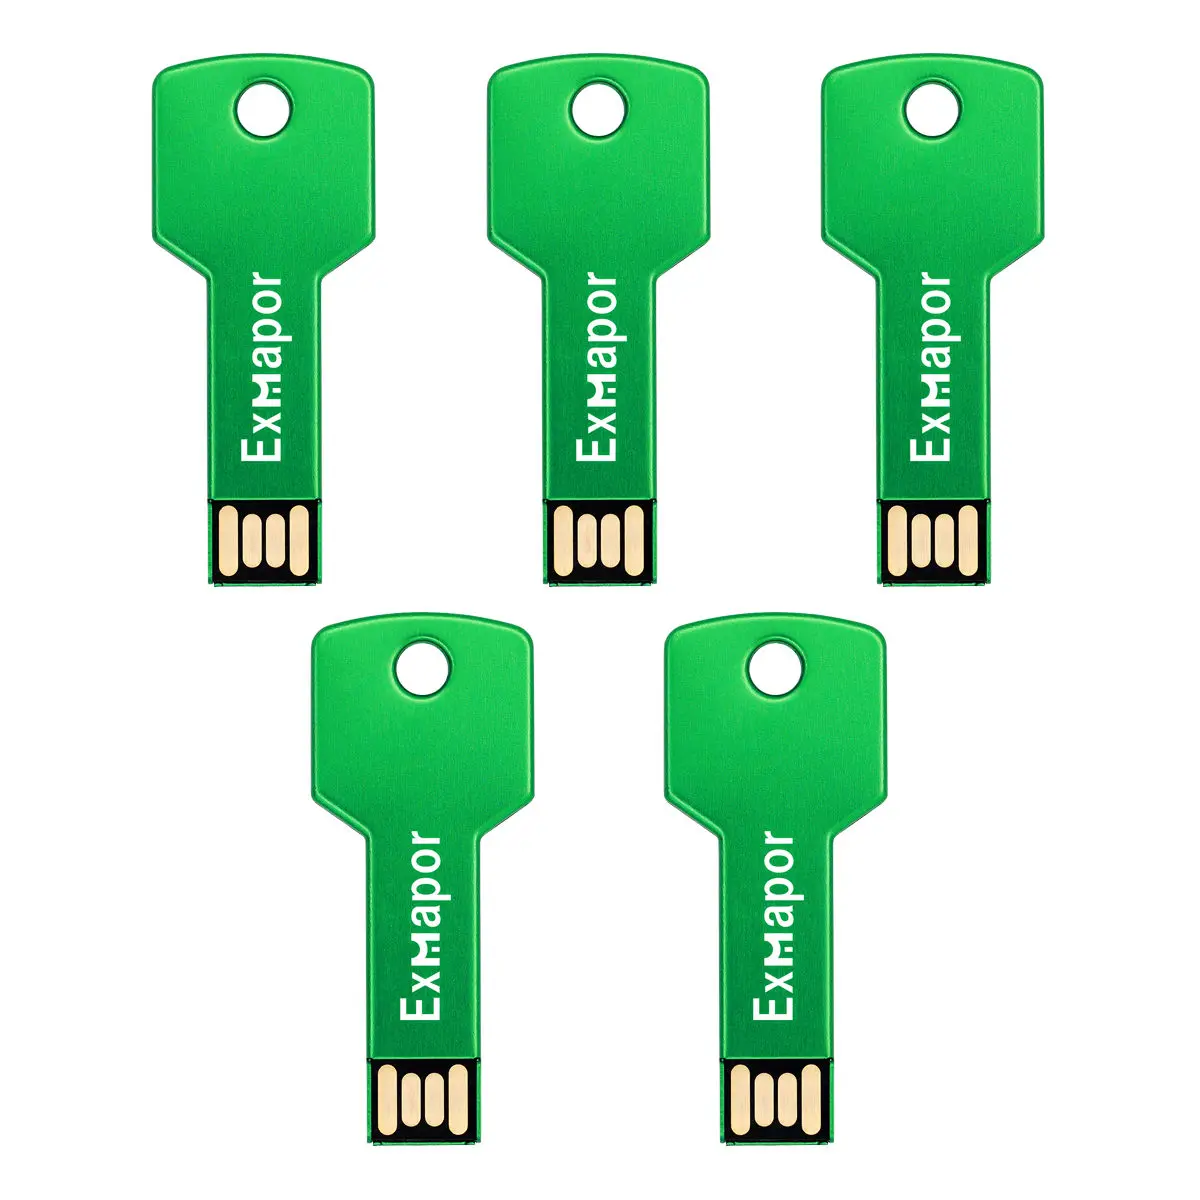 32GB Flash Drive, Exmapor USB Drive 5 X 16 GB USB Flash Drive 64 gb Thumb Drive Memory Stick Metal Key Keychain Design Green